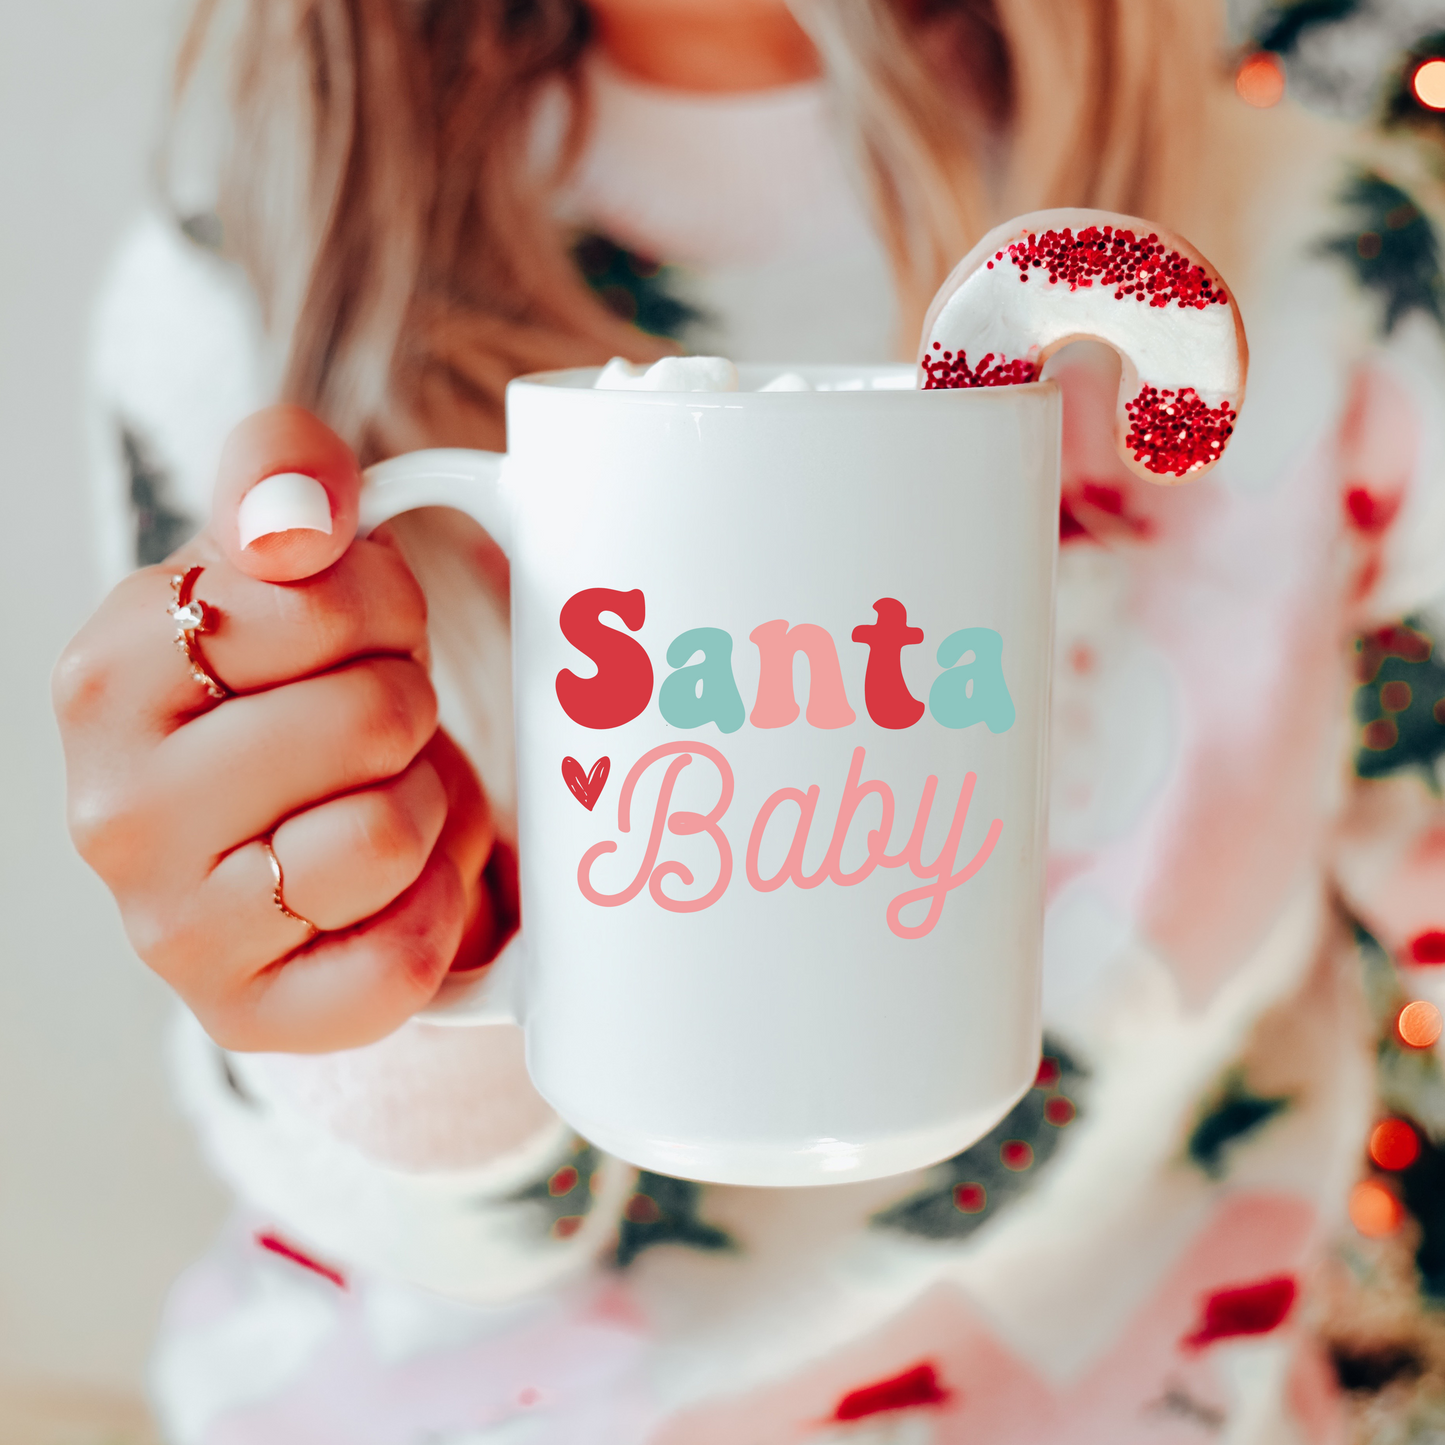 Santa Baby Mug